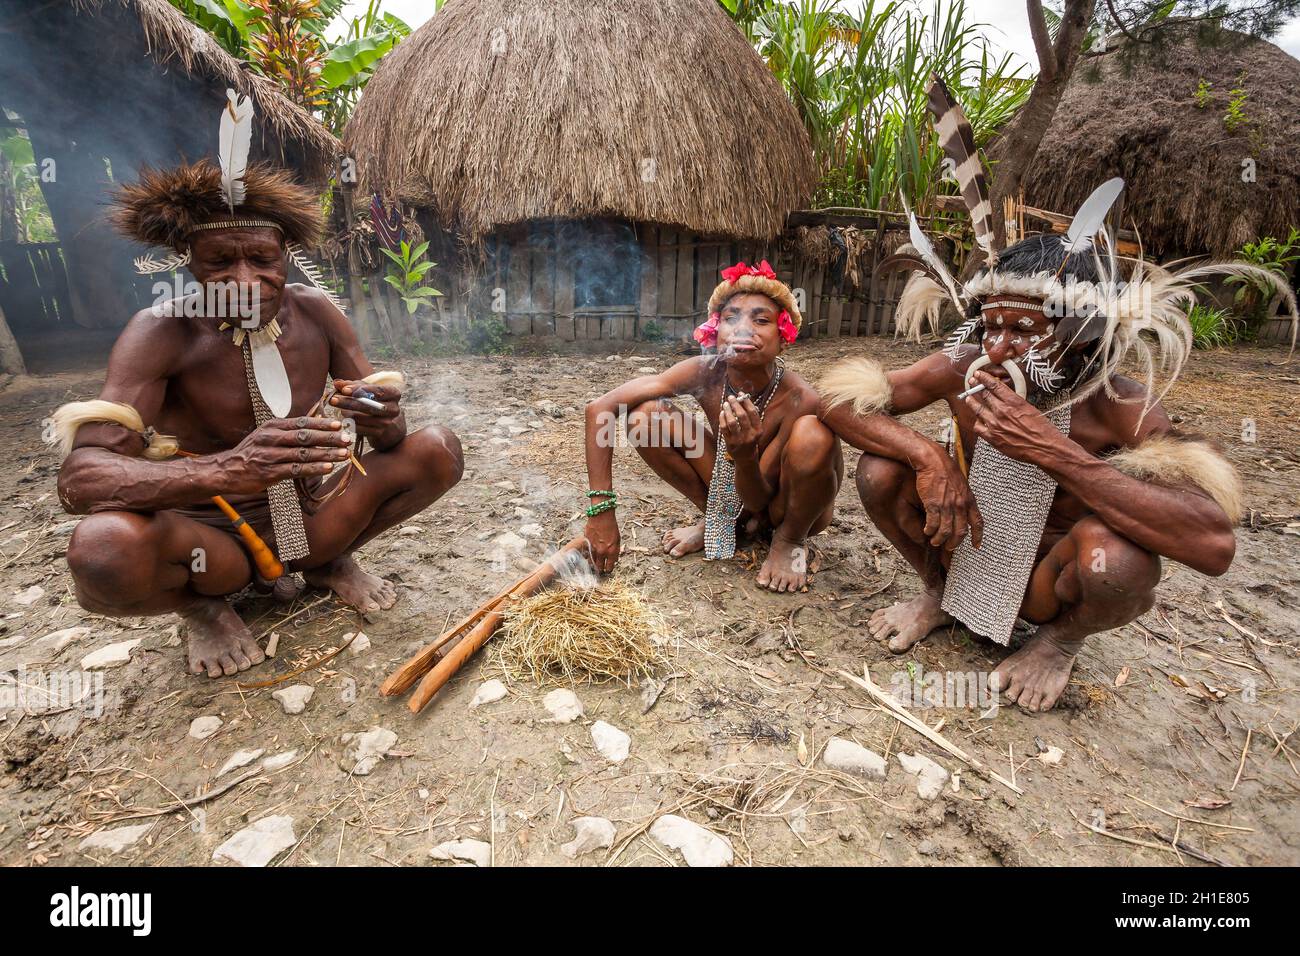 Wamena, Indonesien - 9. Januar 2010: Drei Männer des Dani-Stammes in traditioneller Kleidung rauchen eine Zigarette Stockfoto